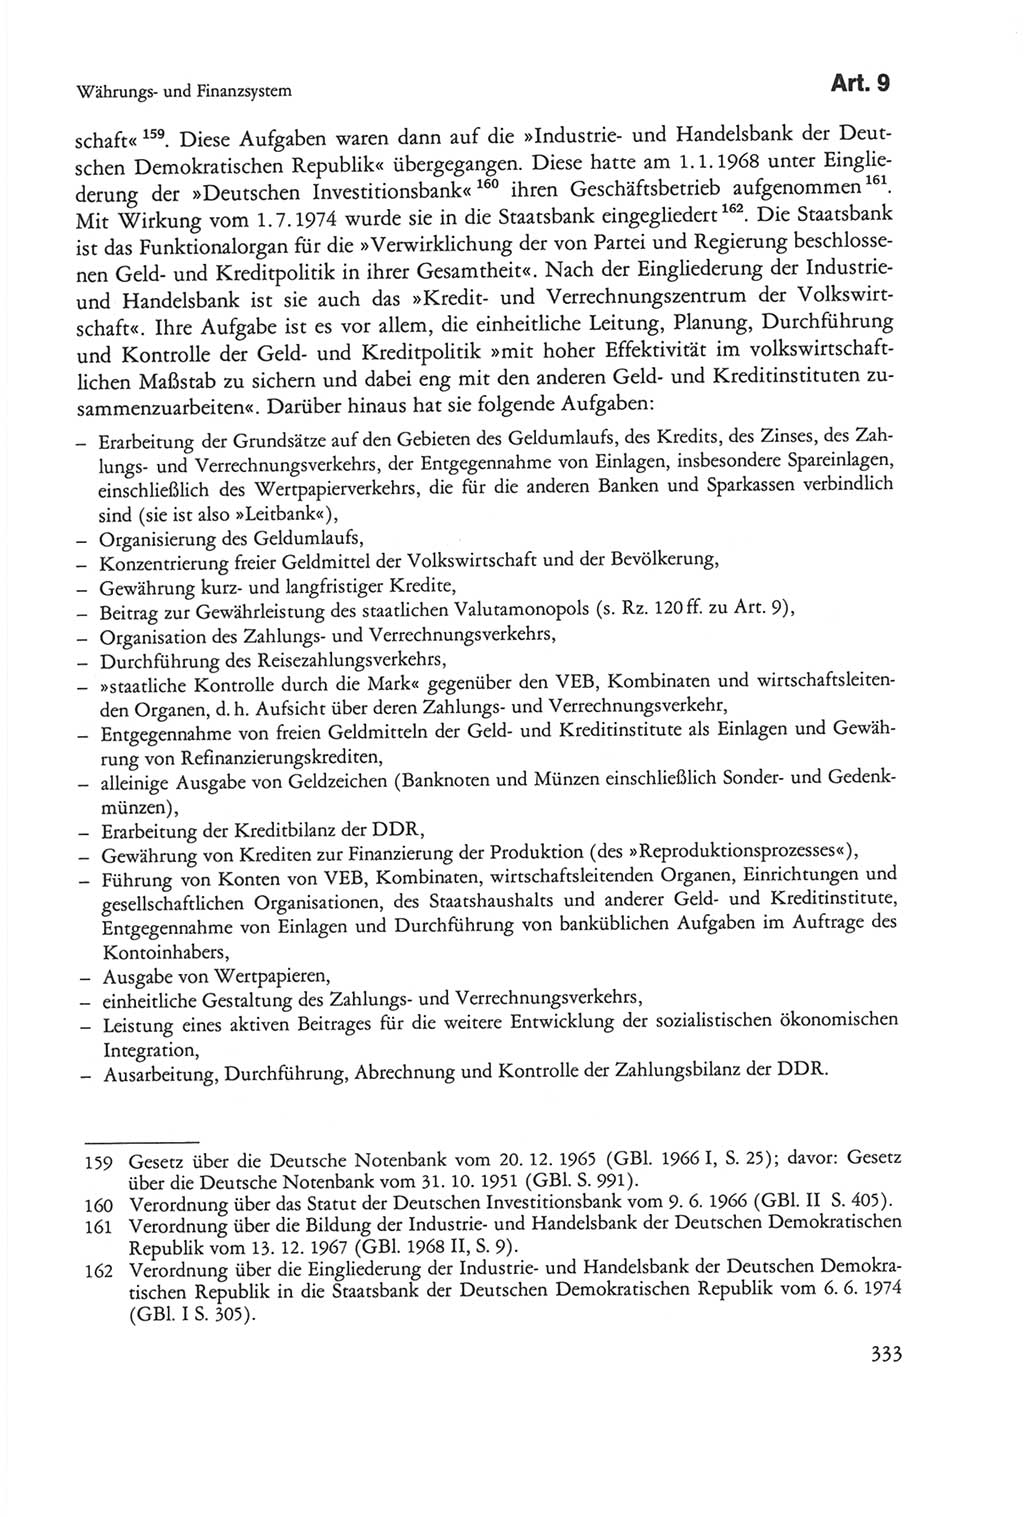 Die sozialistische Verfassung der Deutschen Demokratischen Republik (DDR), Kommentar mit einem Nachtrag 1997, Seite 333 (Soz. Verf. DDR Komm. Nachtr. 1997, S. 333)